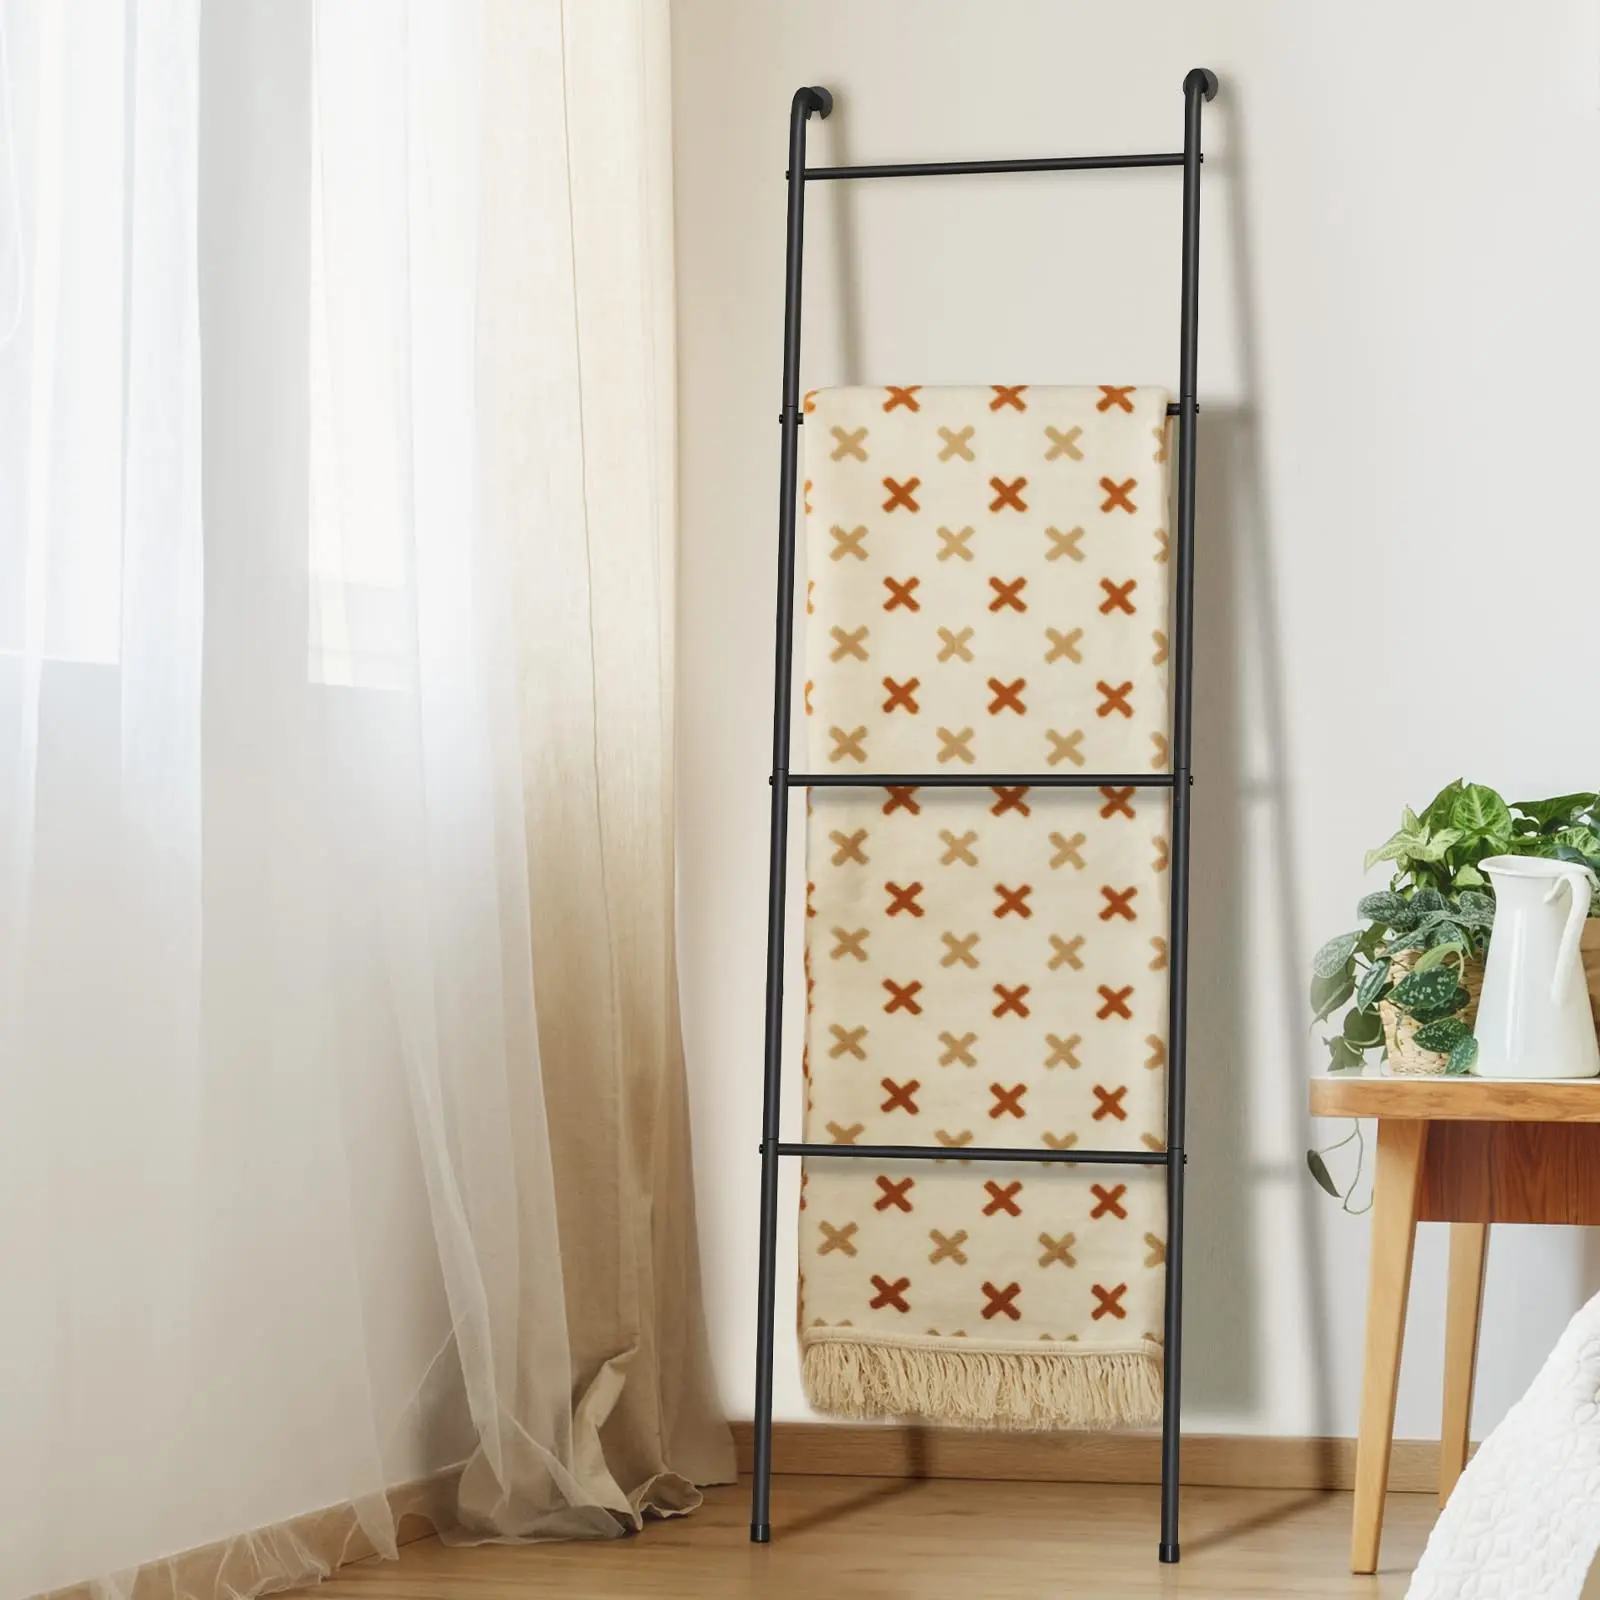 Hot Sales Living Room Bathroom Decorative Metal Holder Blanket Ladder Outdoor Towel Rack For Pool